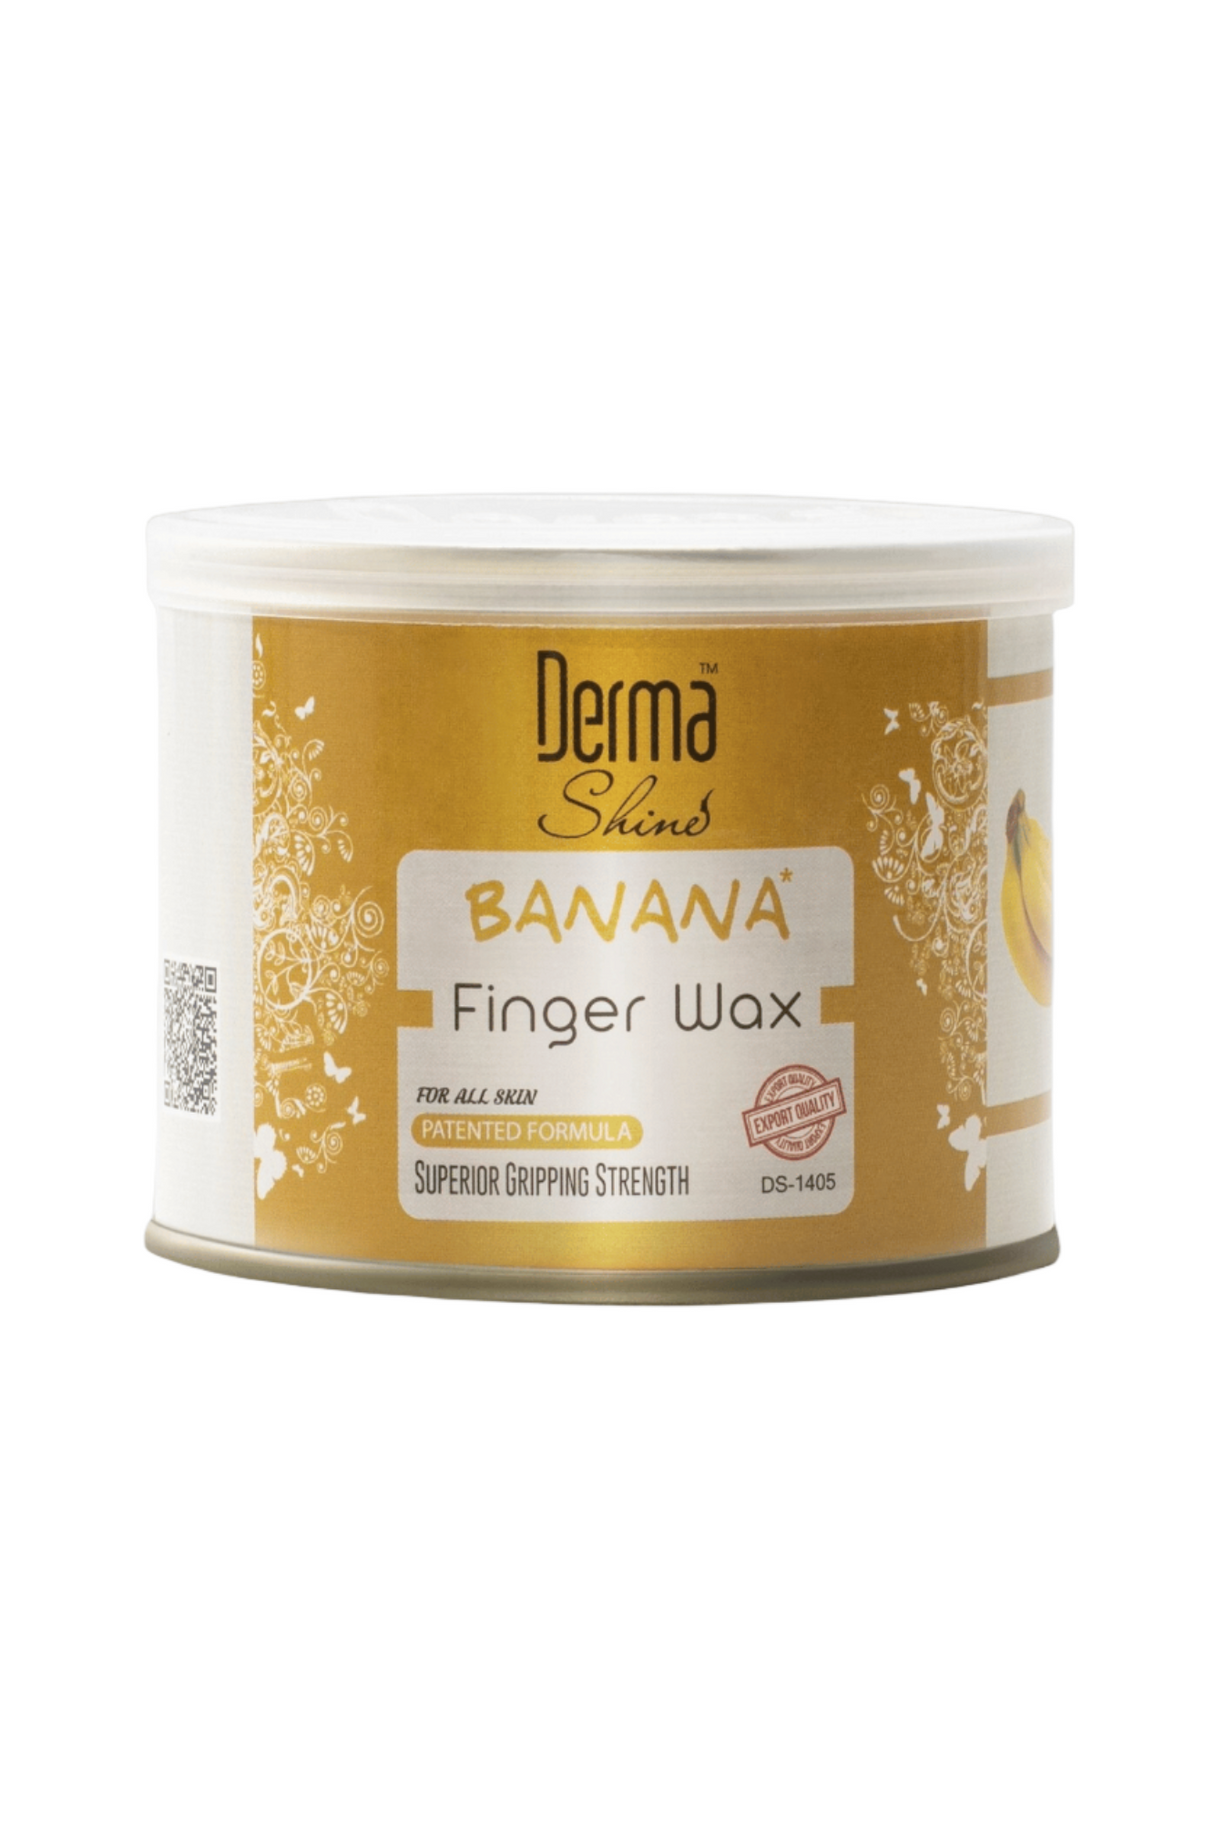 derma shine finger wax banana 250g